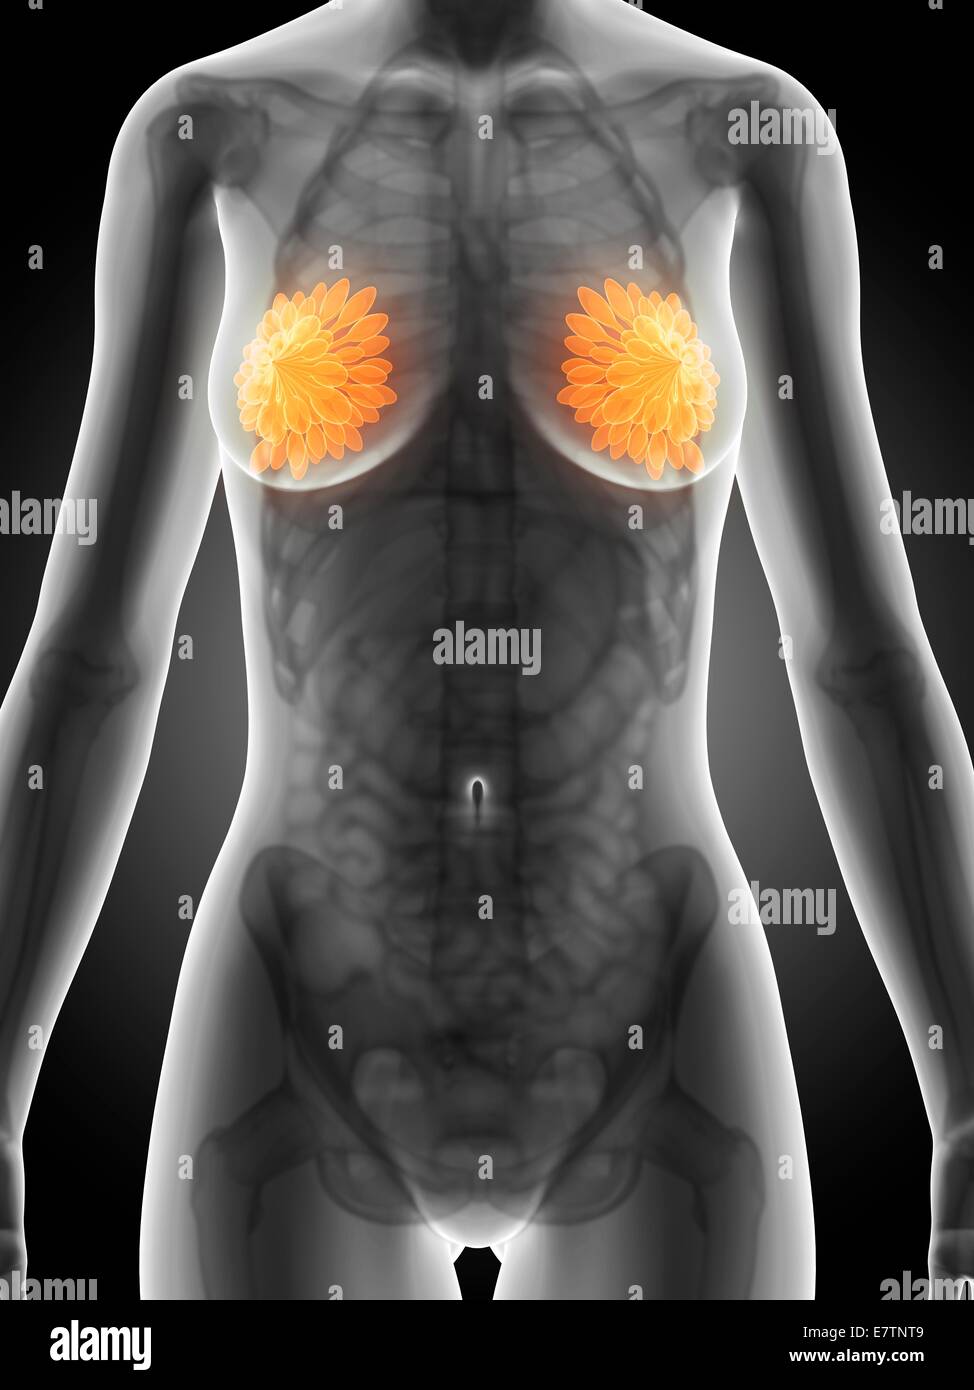 Weibliche Brustdrüsen, Computer-Grafik. Stockfoto